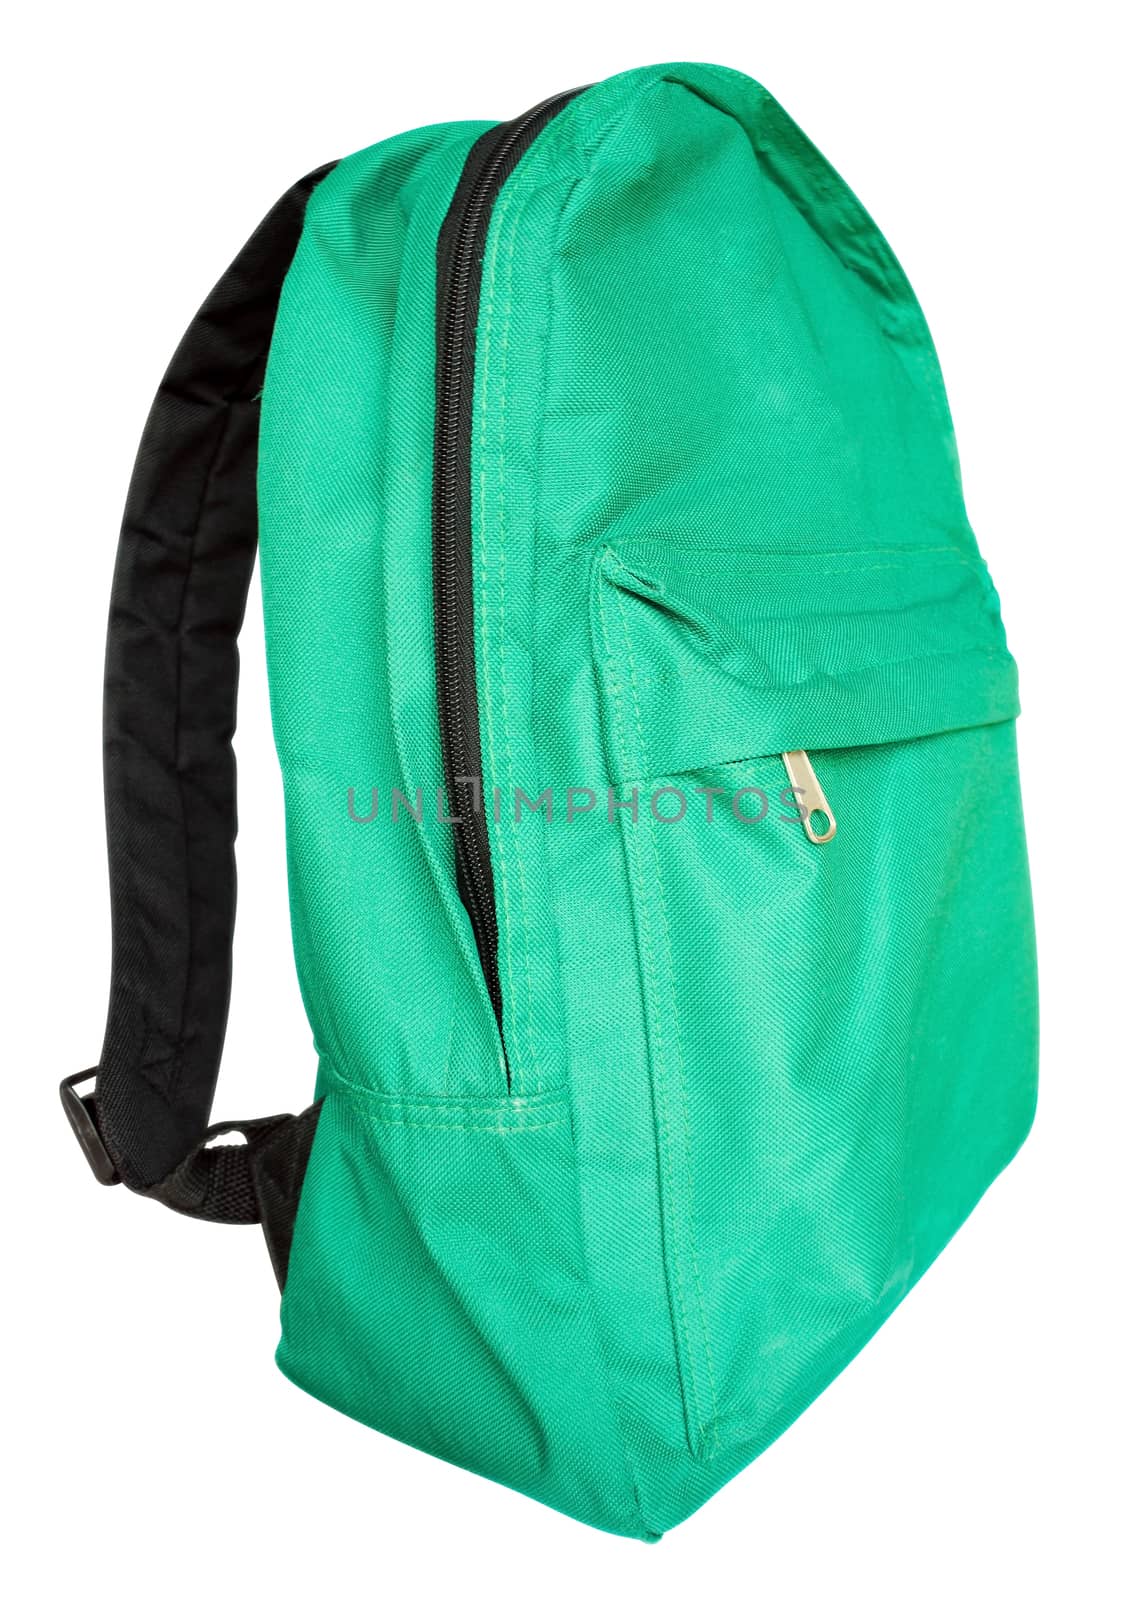 Green backpack by Venakr